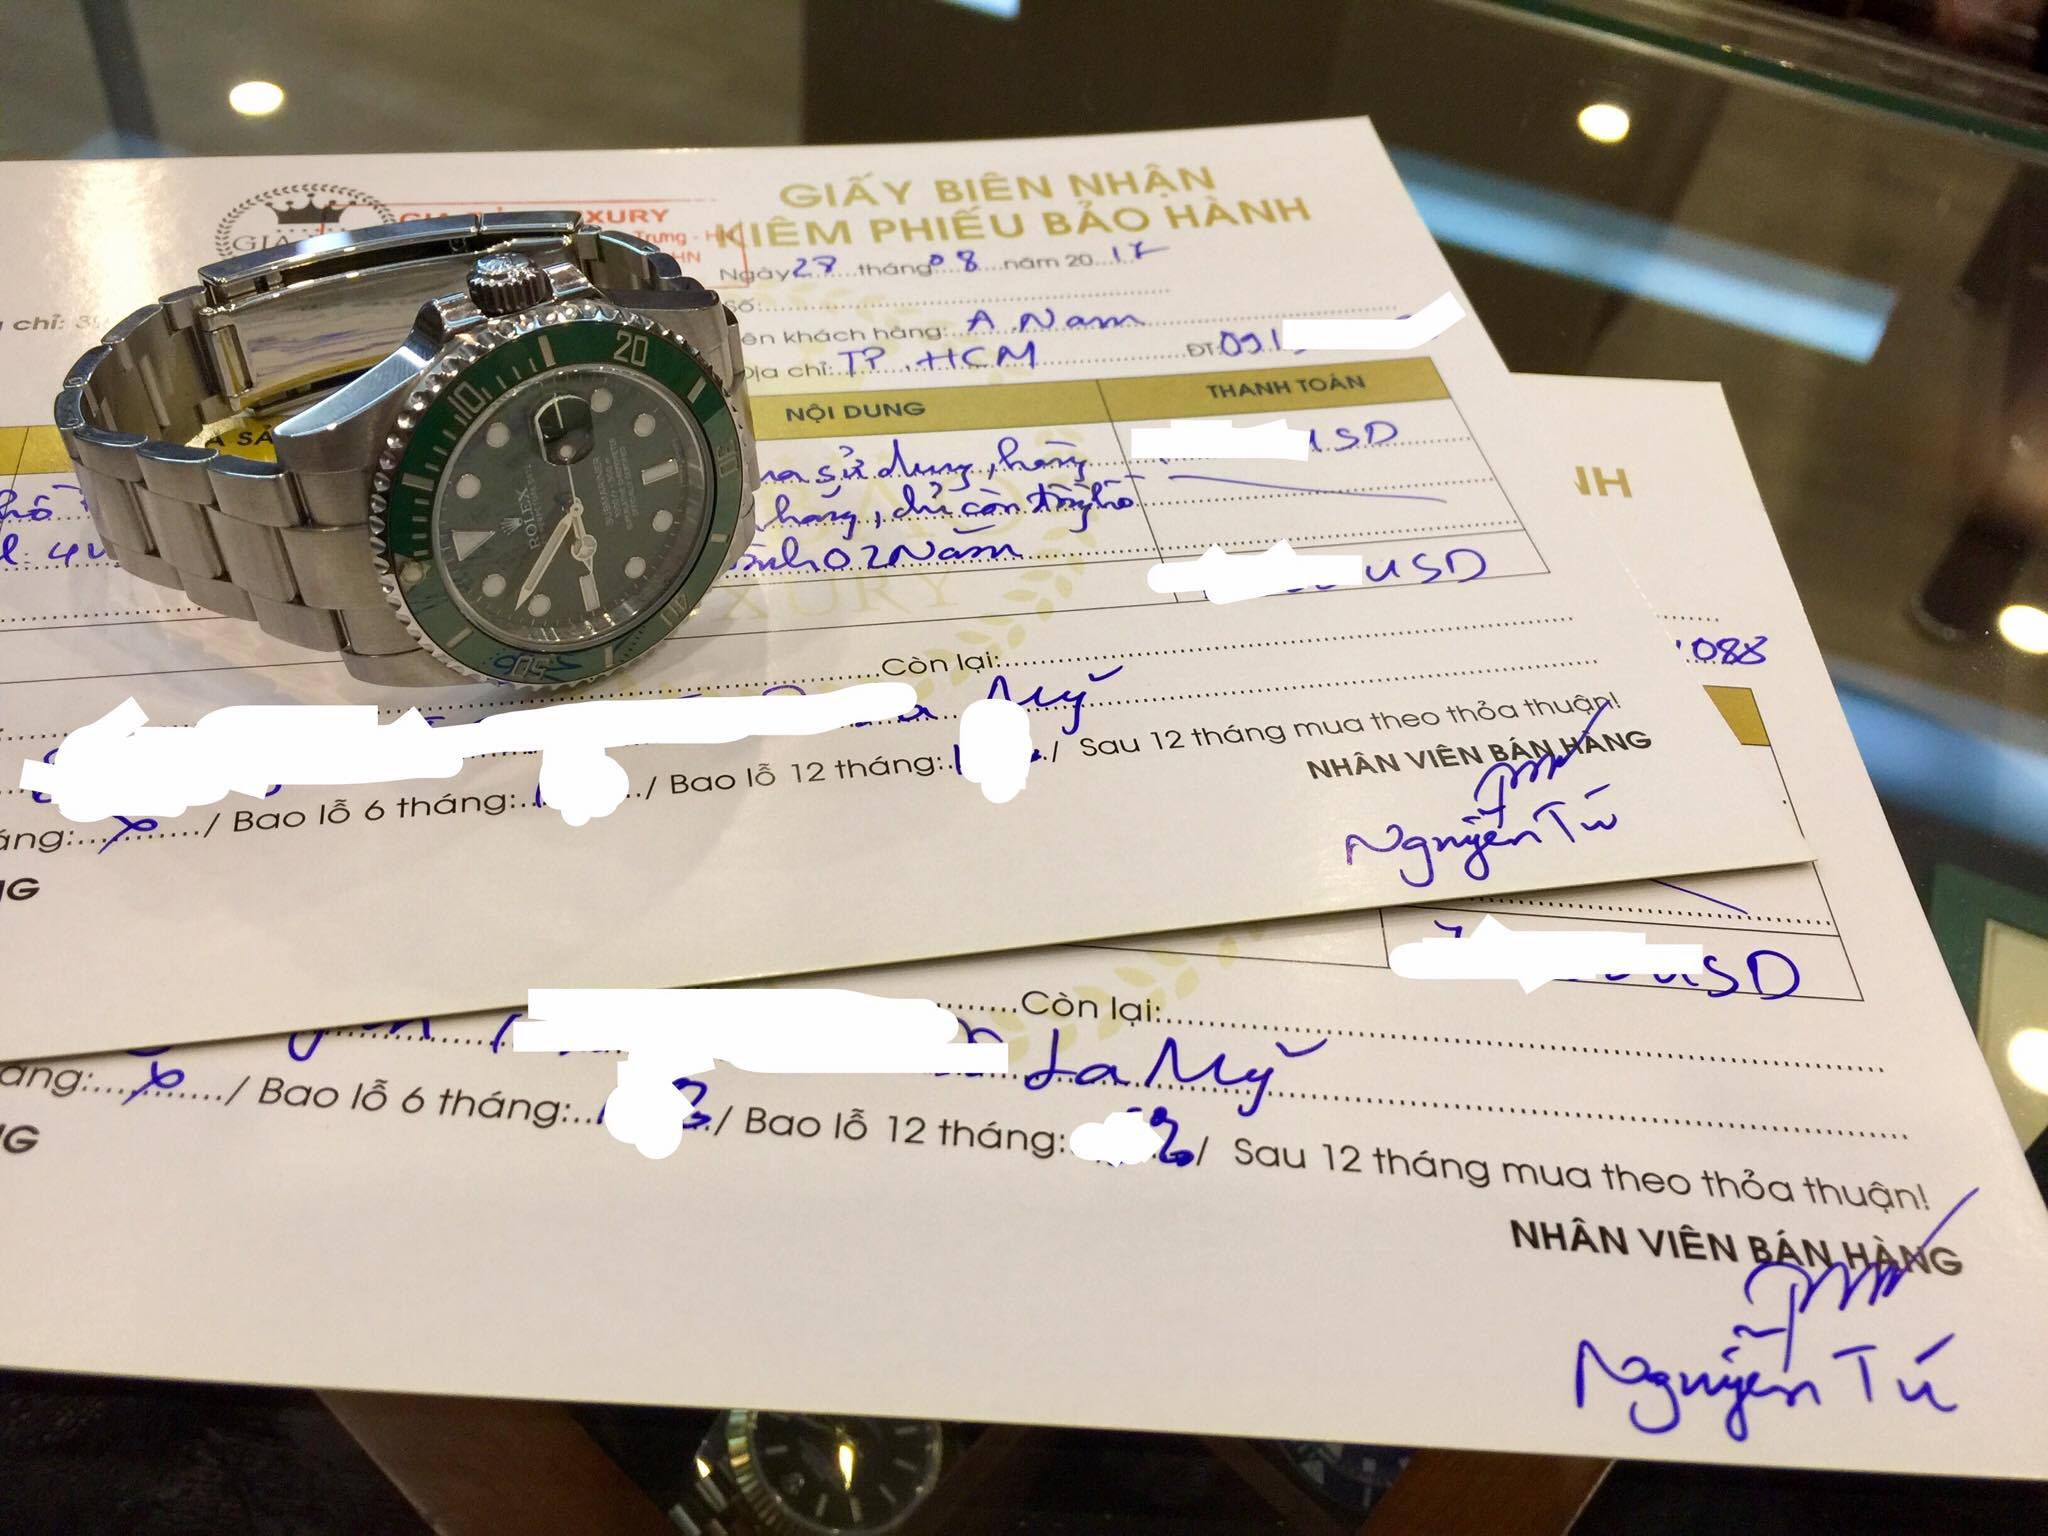 Lời cám ơn tới khách hàng - Anh Nam ở thành phố Hồ Chí Minh giao lưu đồng hồ Rolex Submariner Hulk 116610lv